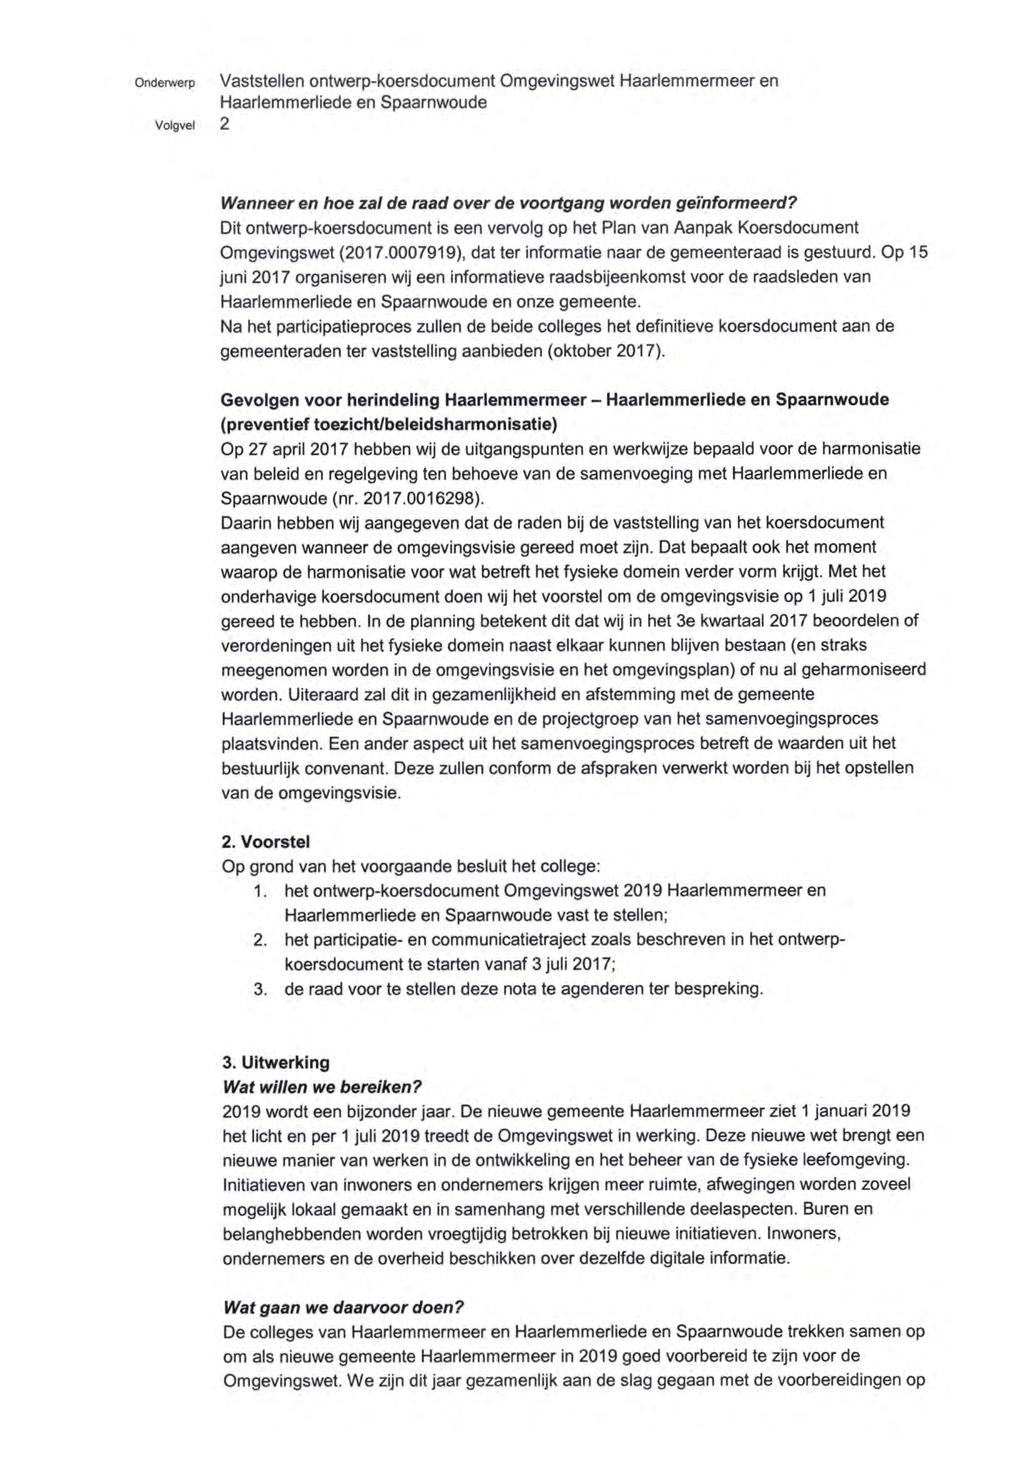 onderwerp Vaststellen ontwerp-koersdocument Omgevingswet Haarlemmermeer en Haarlemmerliede en Spaarnwoude Volgvel 2 Wanneer en hoe zal de raad over de voortgang worden geïnformeerd?